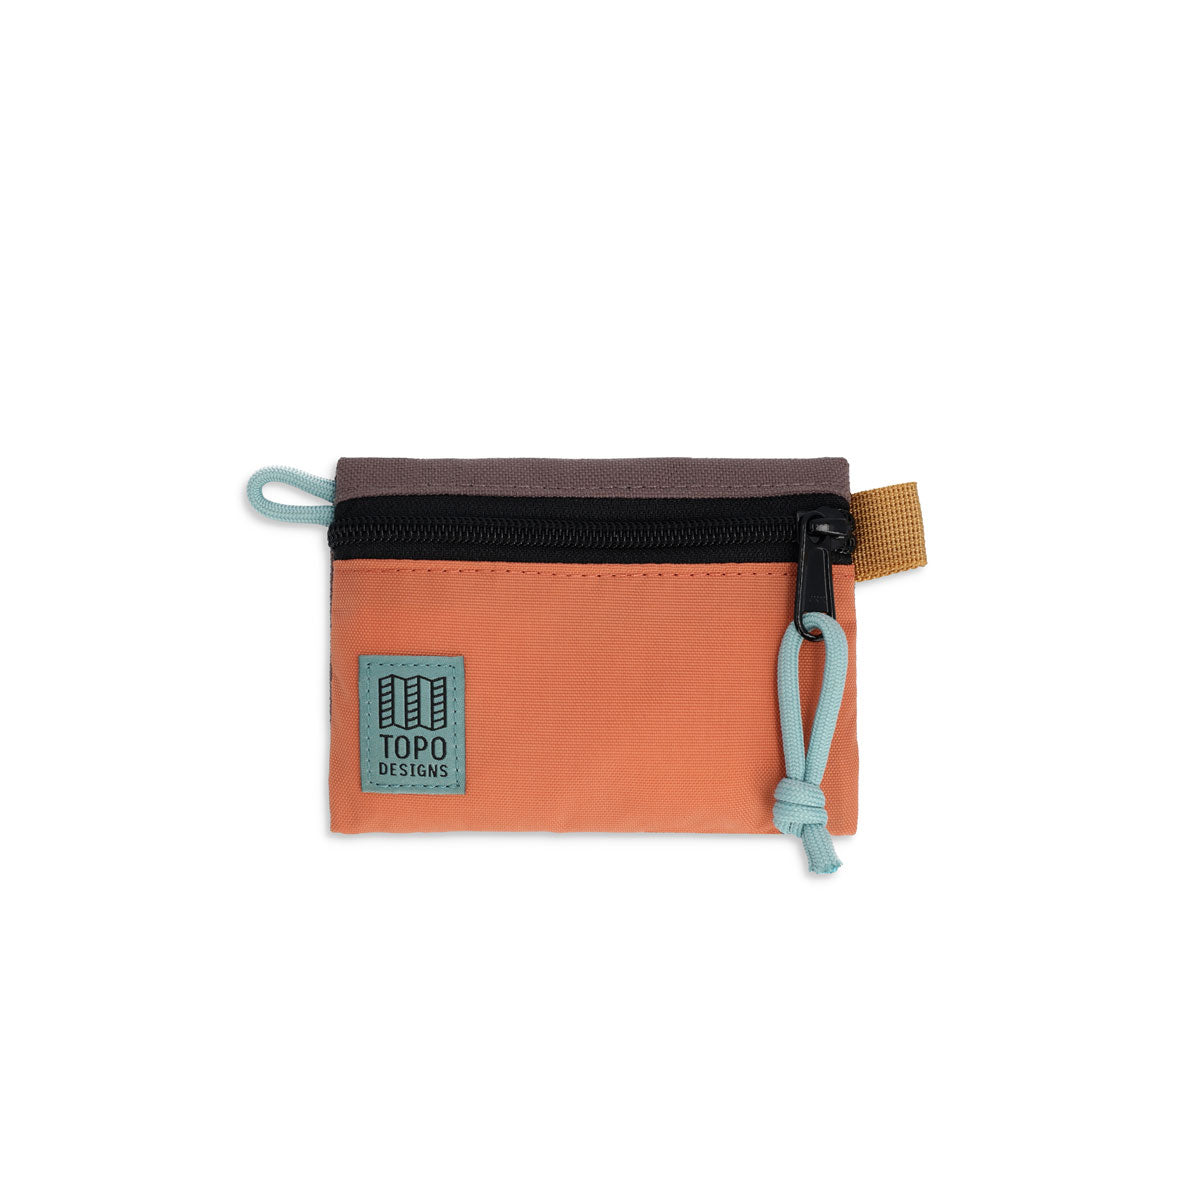 Topo Designs : Accessory Bag : Coral/Peppercorn